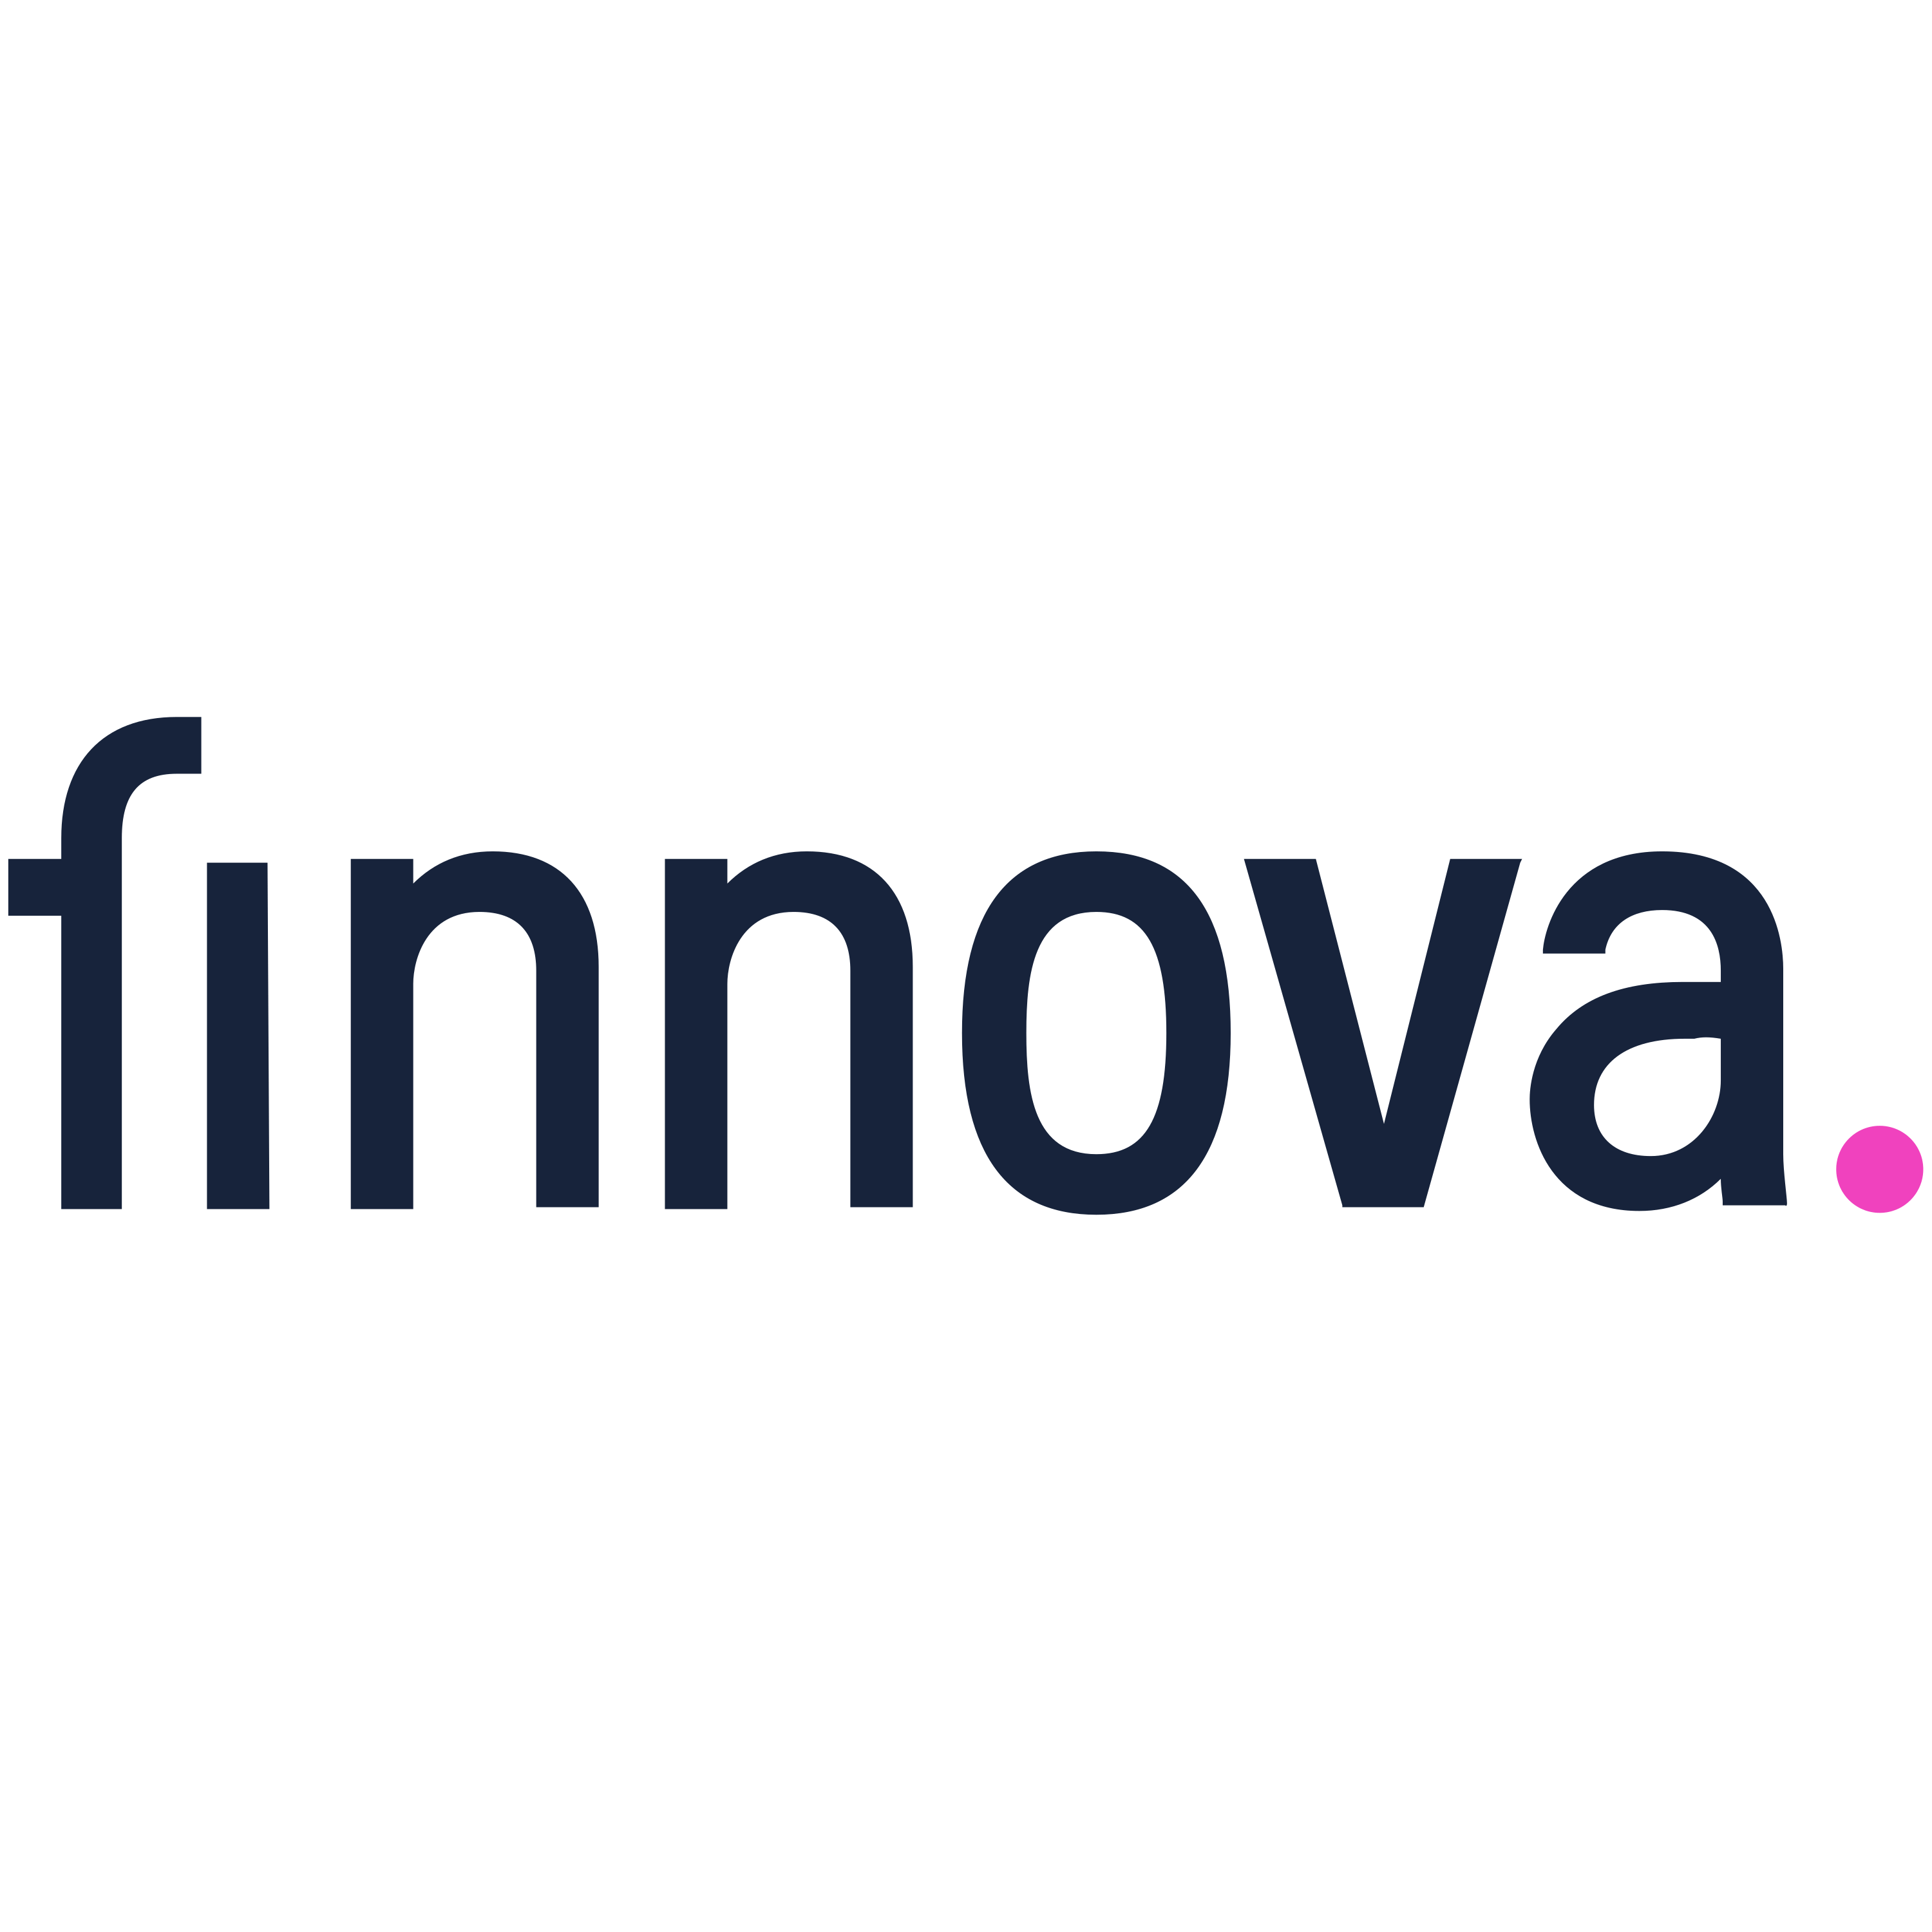 Finnova Logo Transparent Image